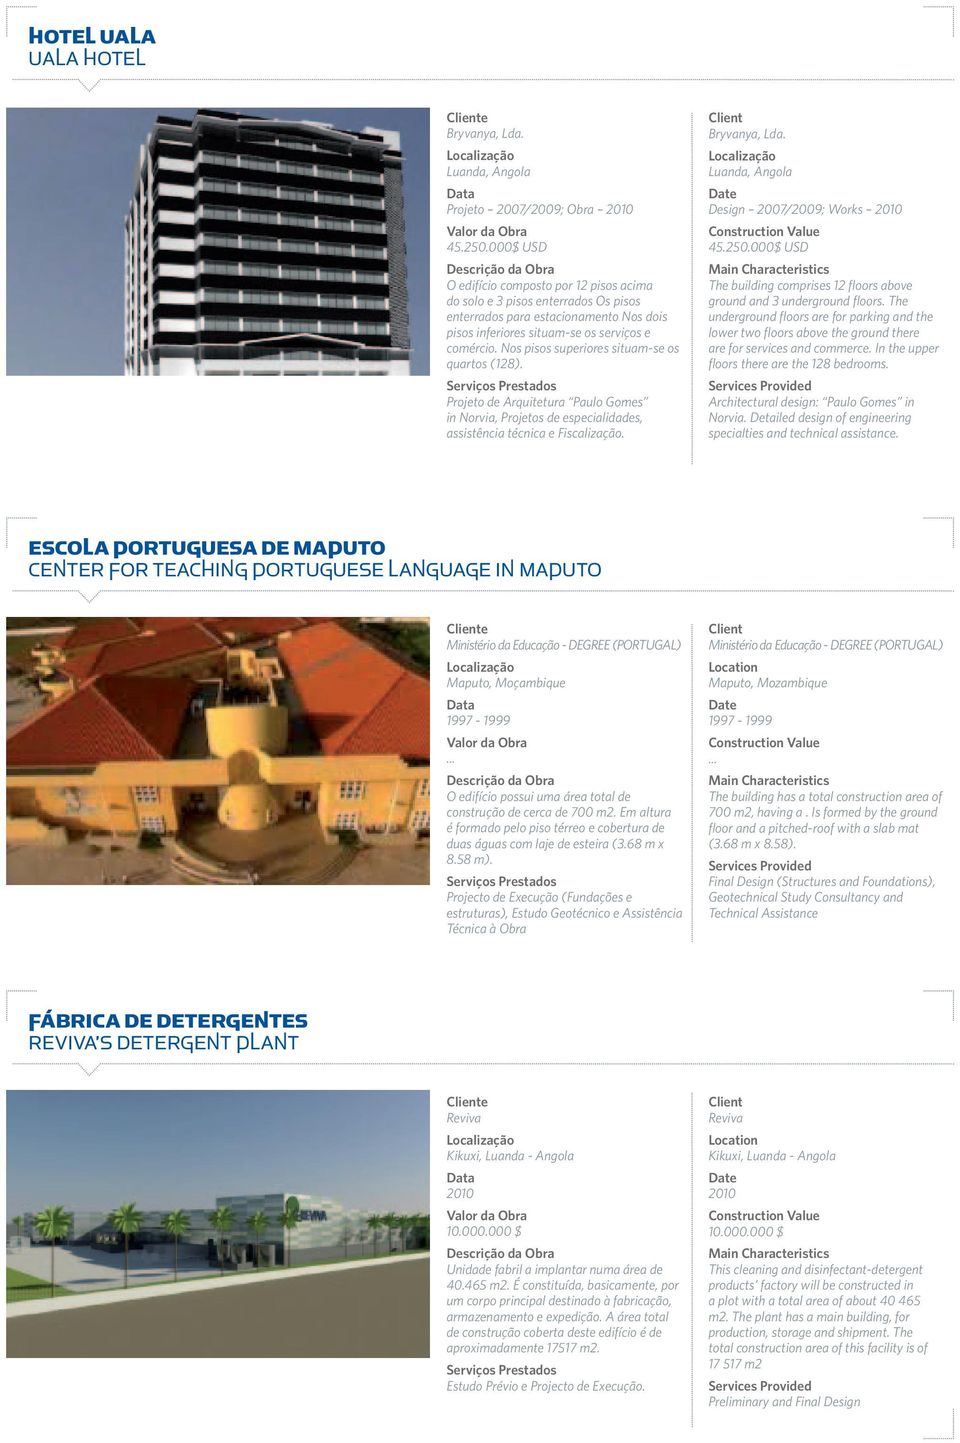 Nos pisos superiores situam-se os quartos (128). Projeto de Arquitetura Paulo Gomes in Norvia, Projetos de especialidades, assistência técnica e Fiscalização. Bryvanya, Lda.